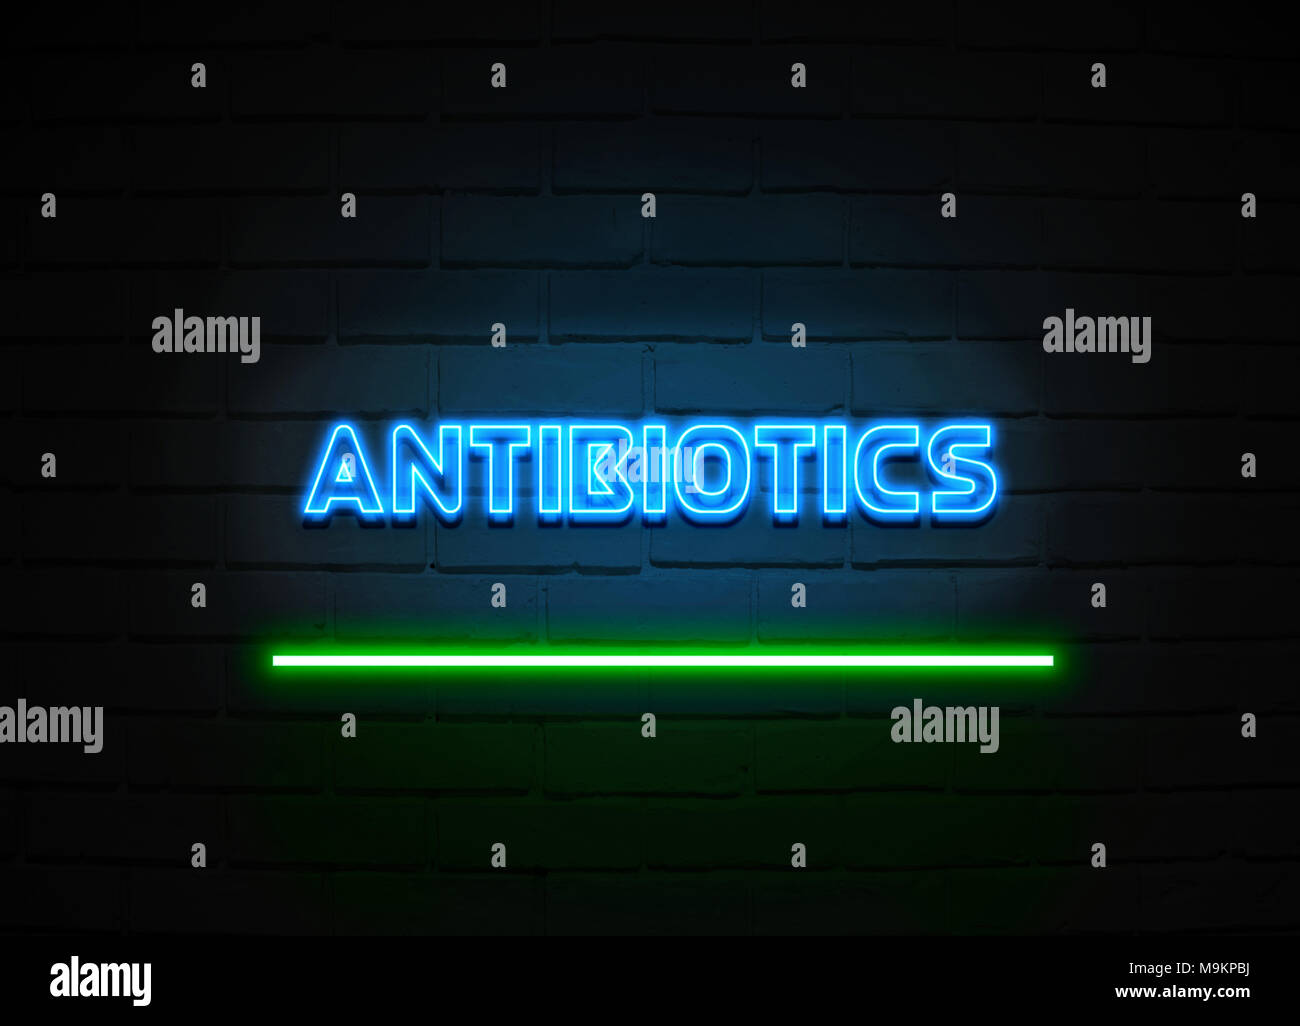 Antibiotika Leuchtreklame - glühende Leuchtreklame auf brickwall Wand - 3D-Royalty Free Stock Illustration dargestellt. Stockfoto